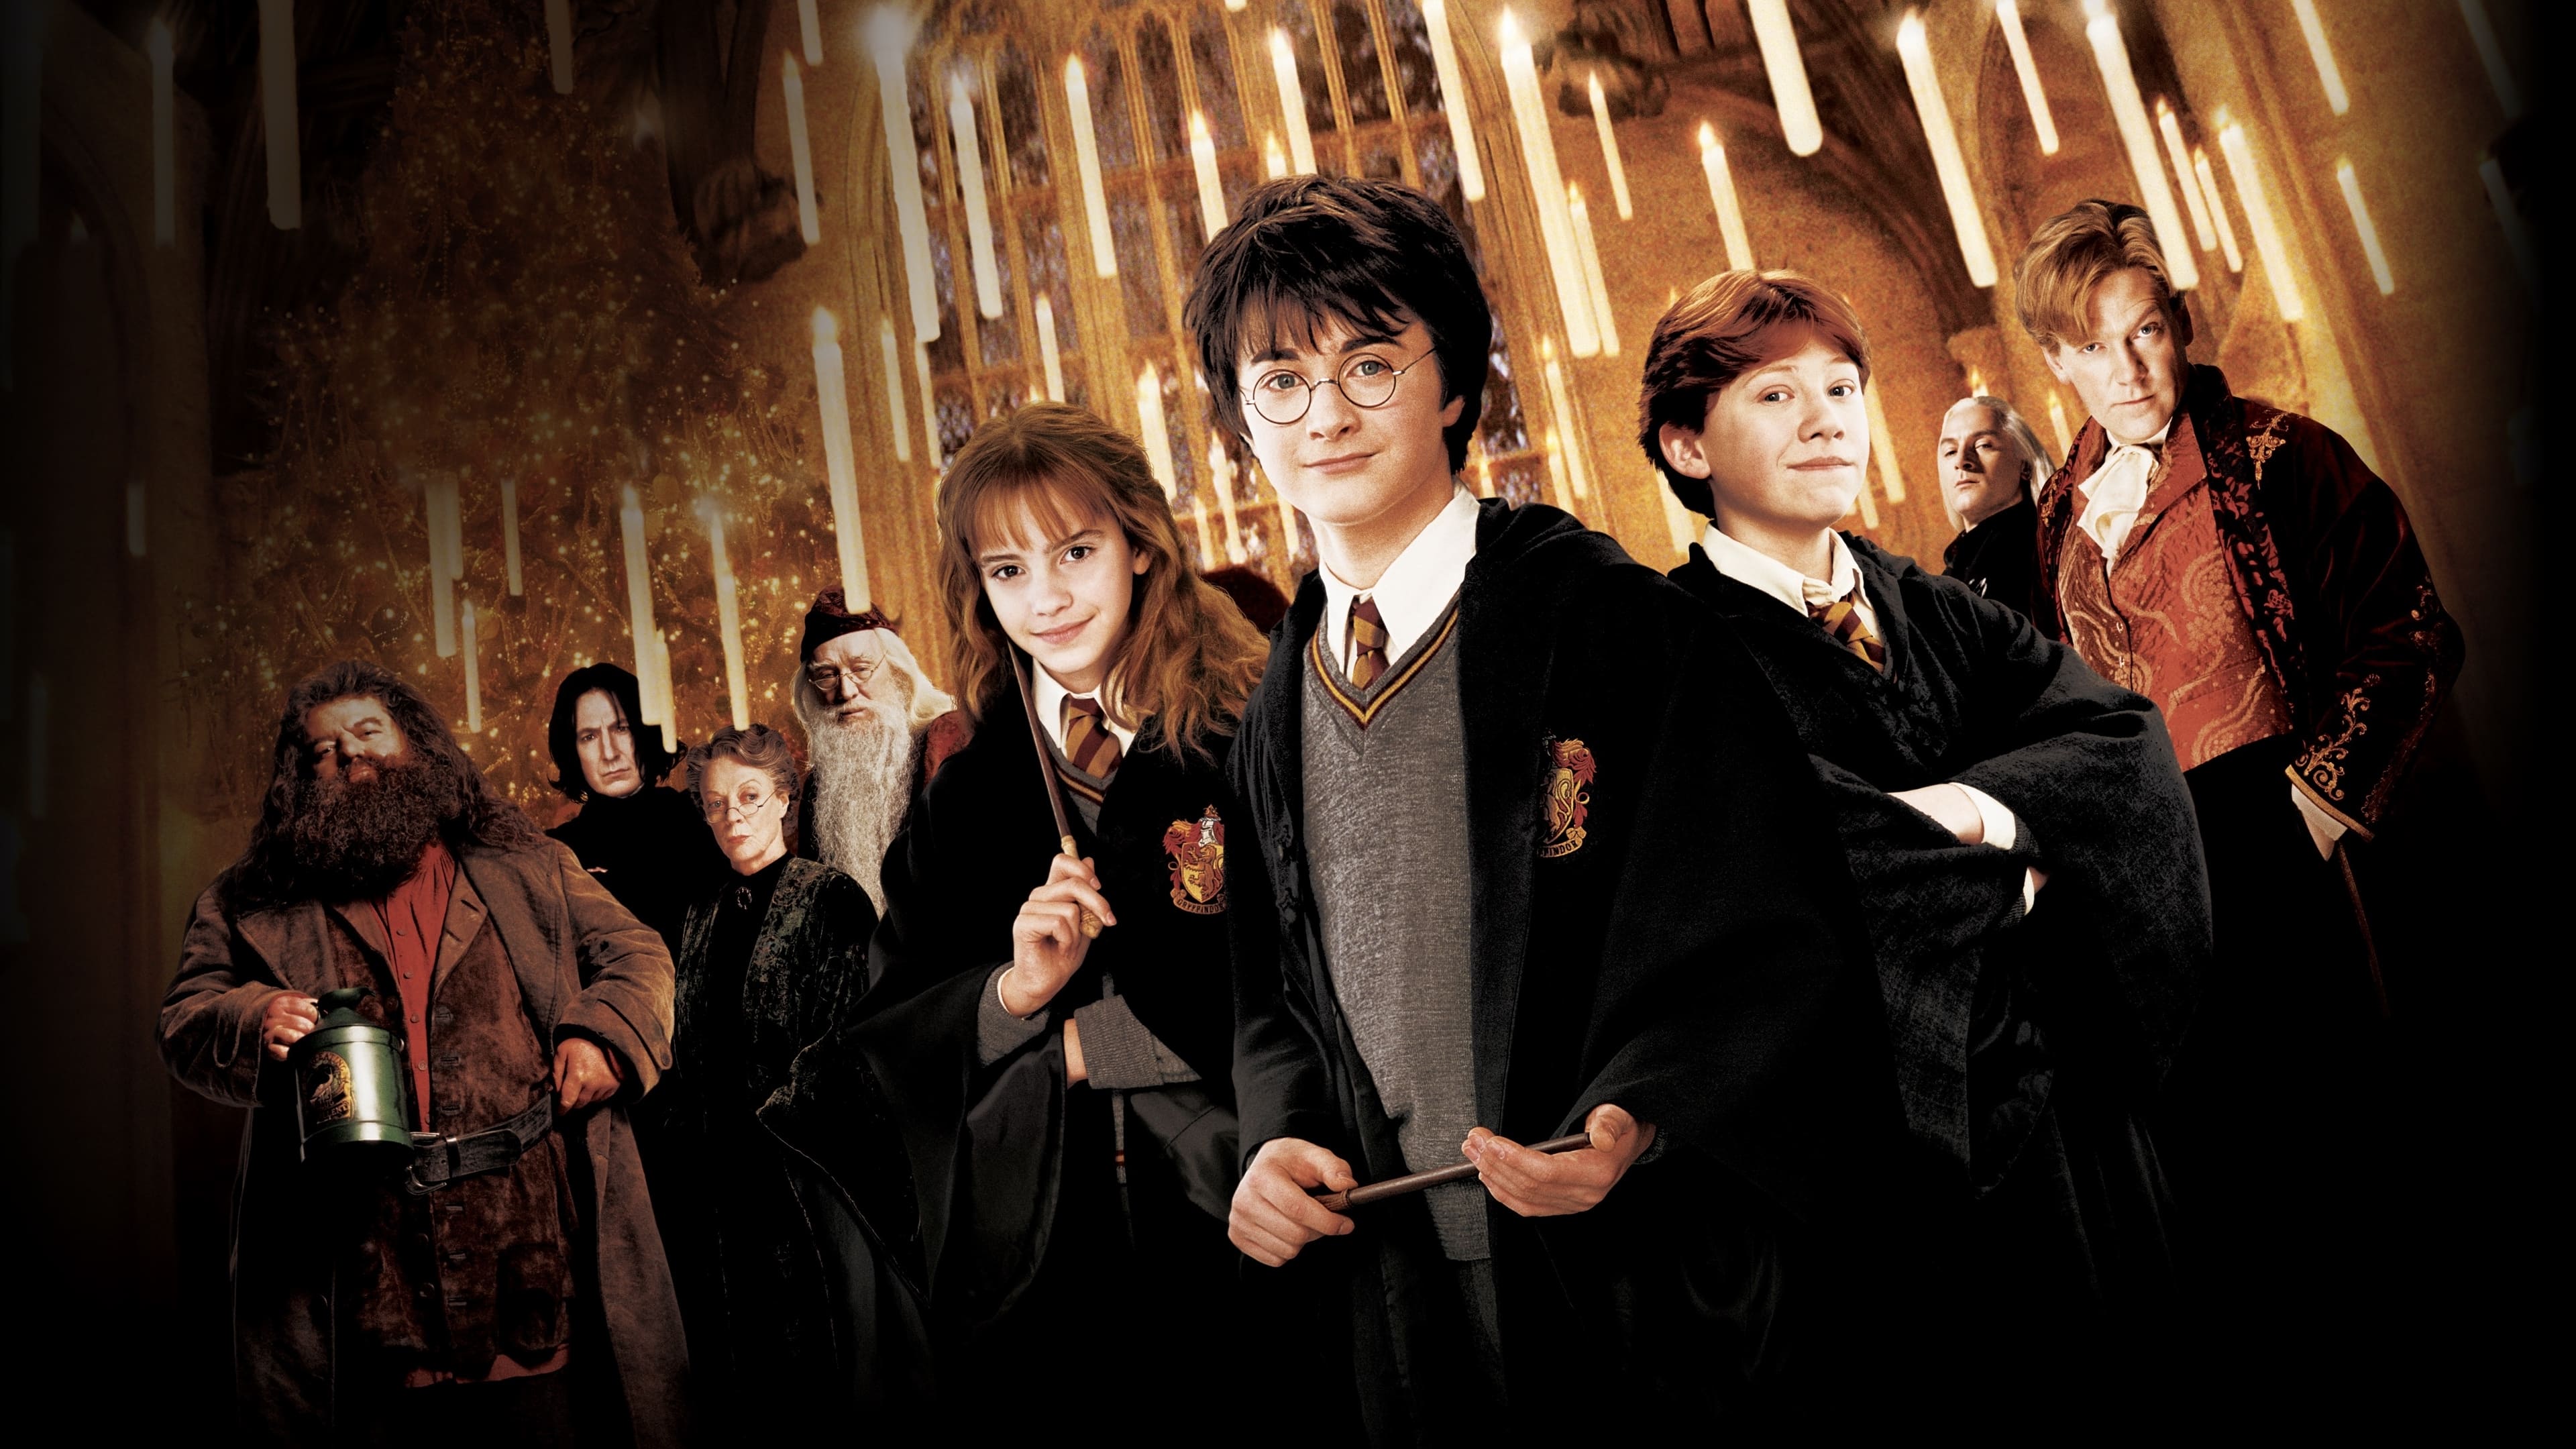 Harry Potter och hemligheternas kammare